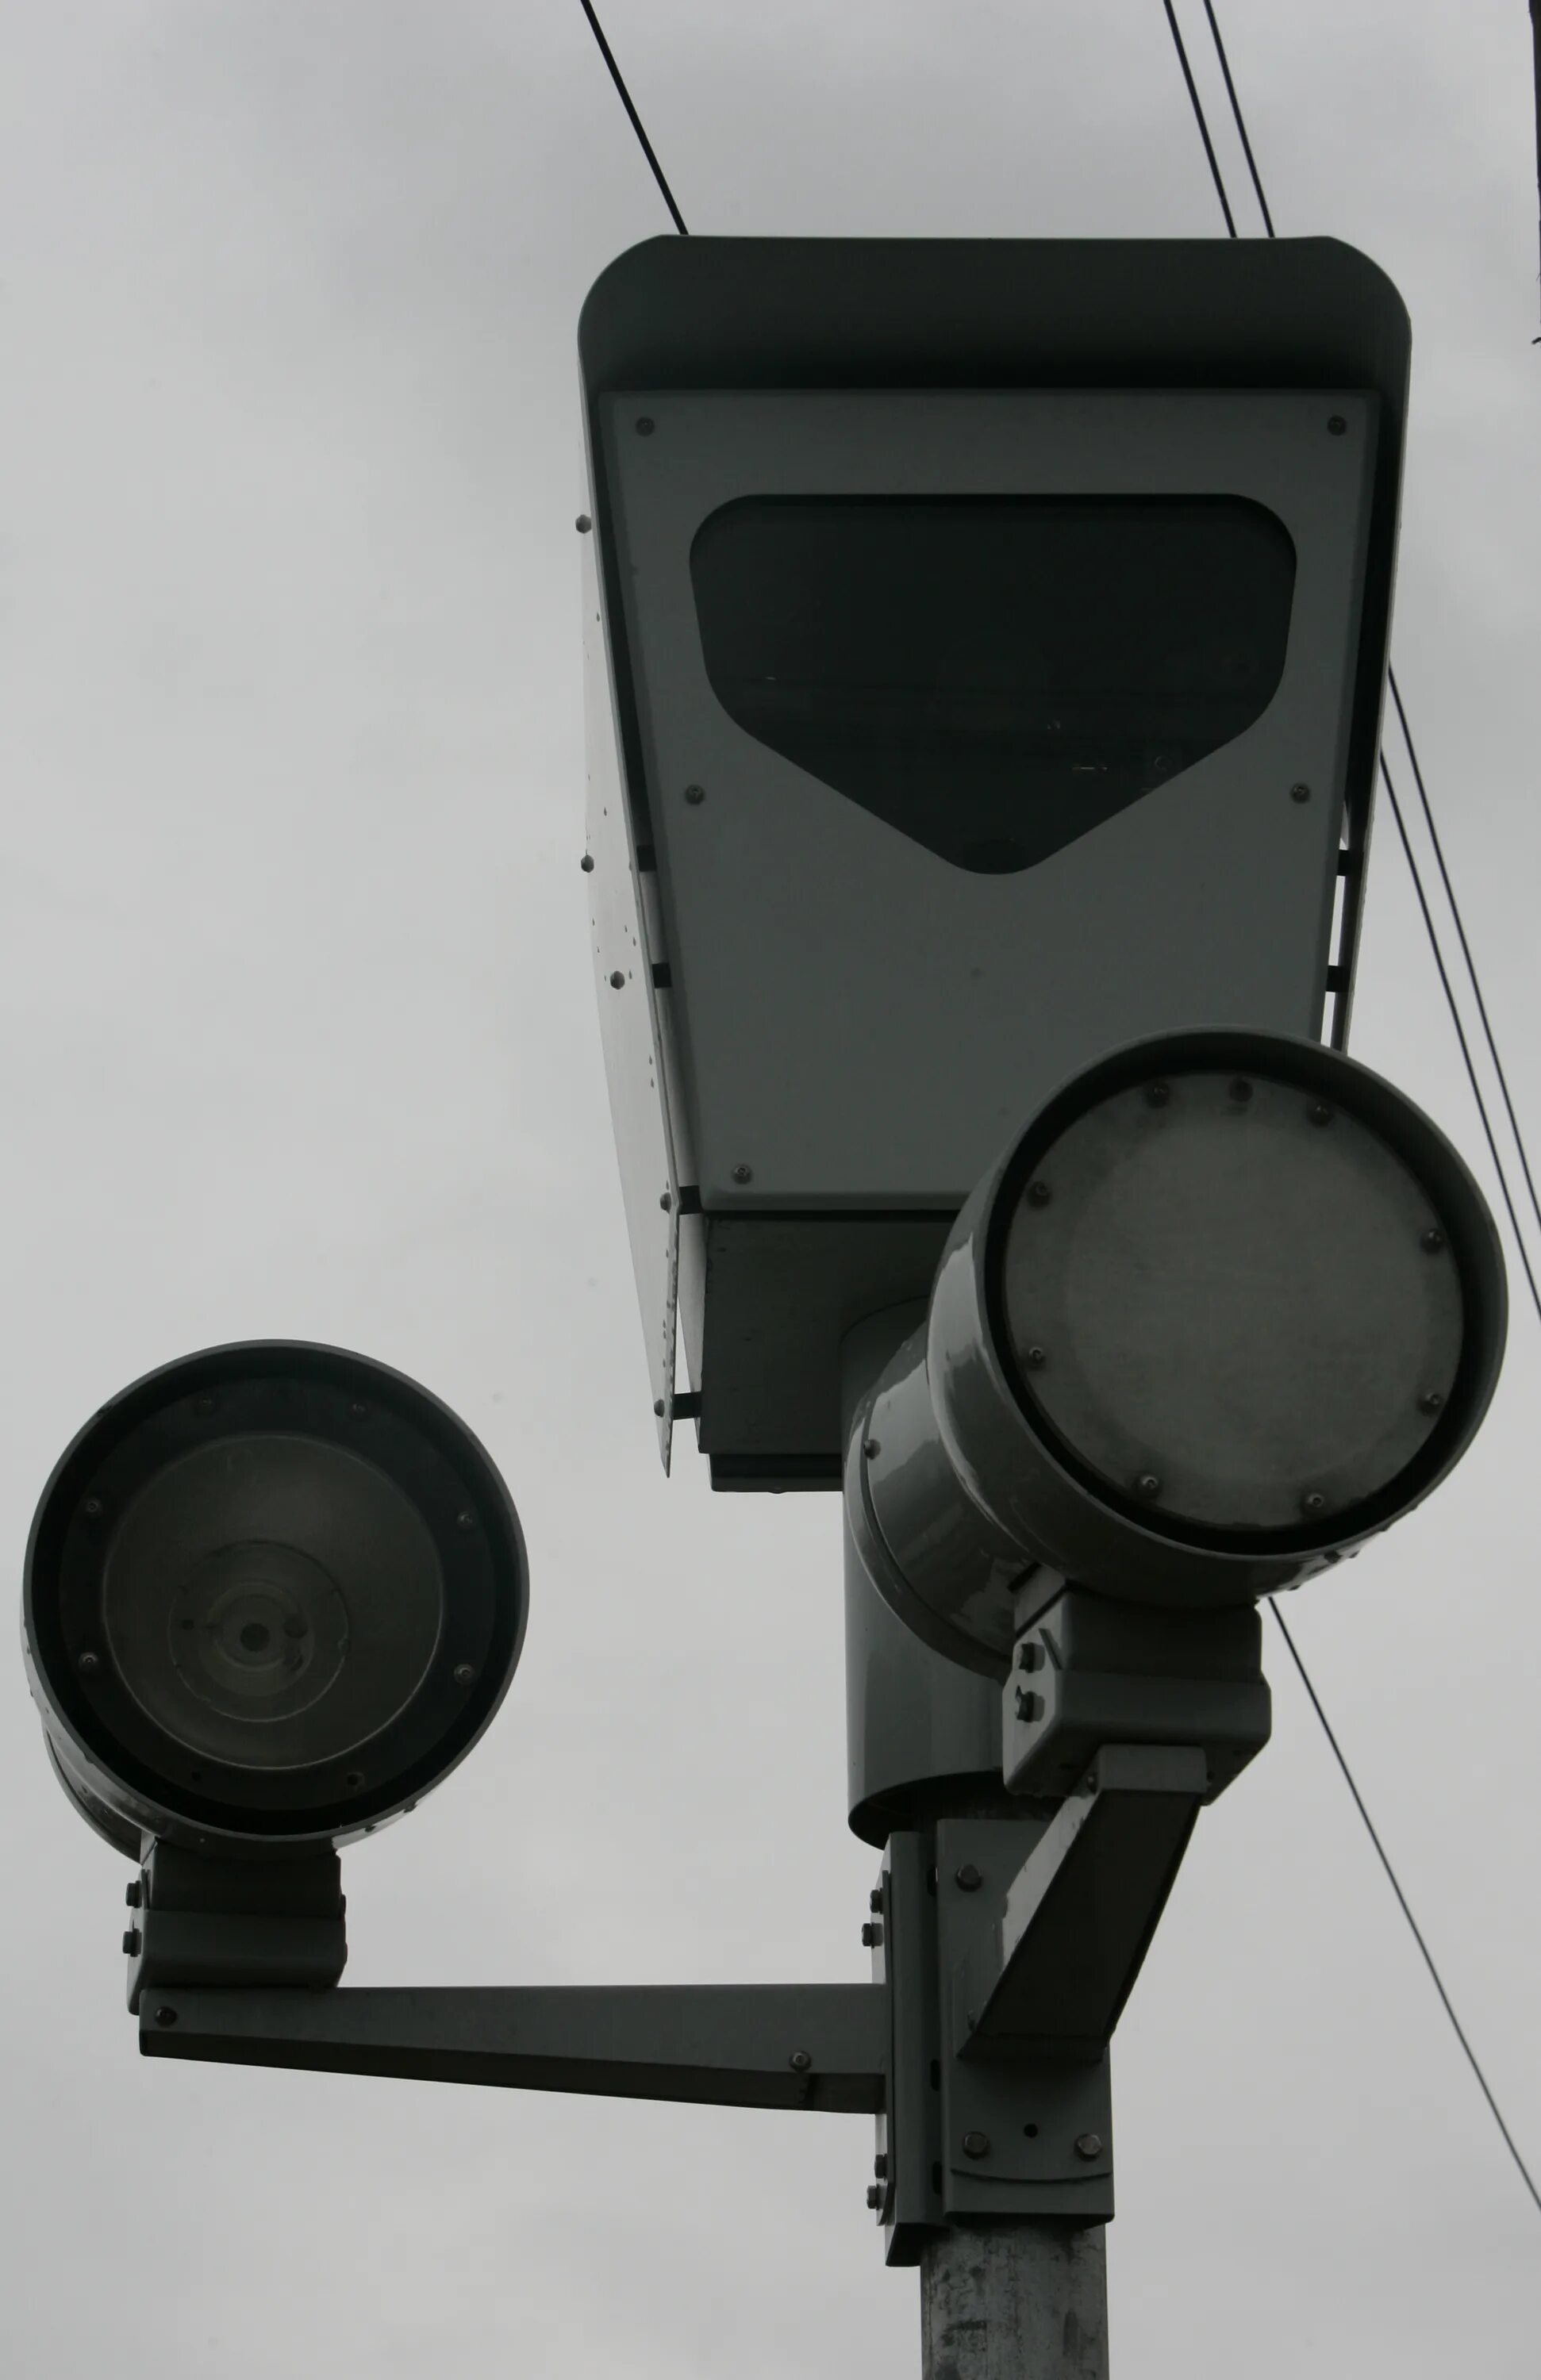 Радар Скат прожектор инфракрасный. Дорожные камеры. Дорожные камеры видеонаблюдения. Столб для камеры видеонаблюдения.